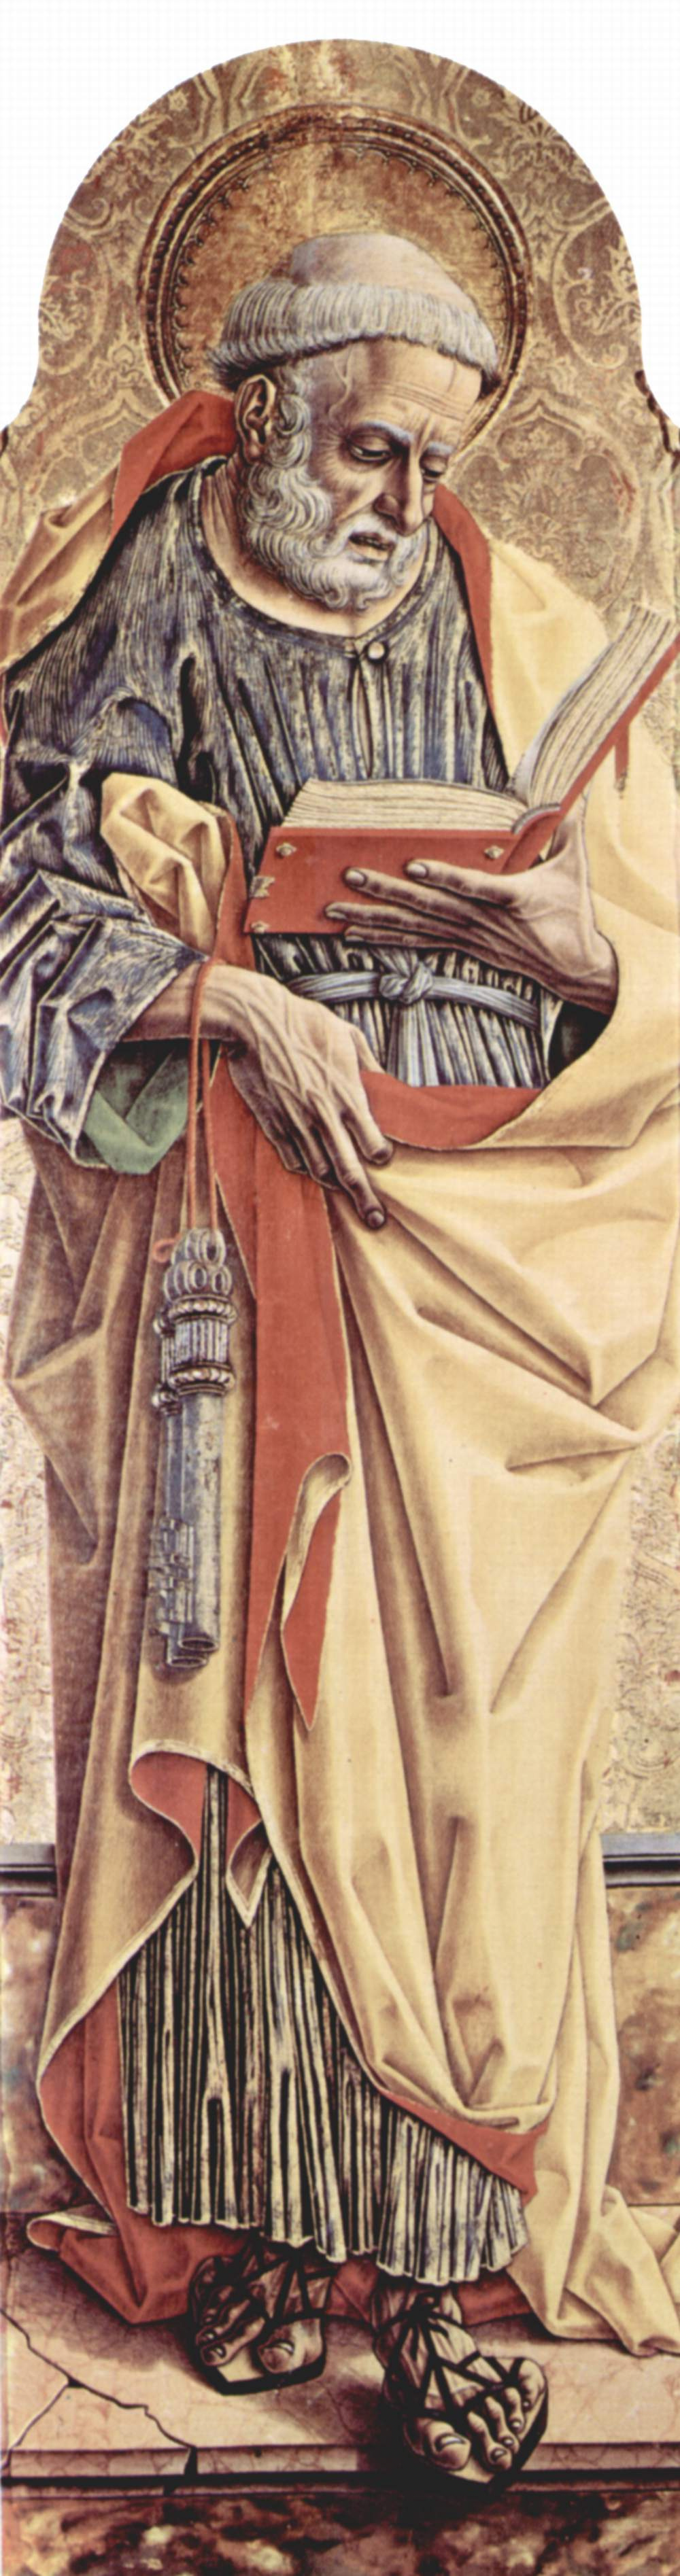 Карло Кривелли. Святой Петр. Центральный алтарь кафедрального собора в Асколи, полиптих, левая створка внешняя сторона